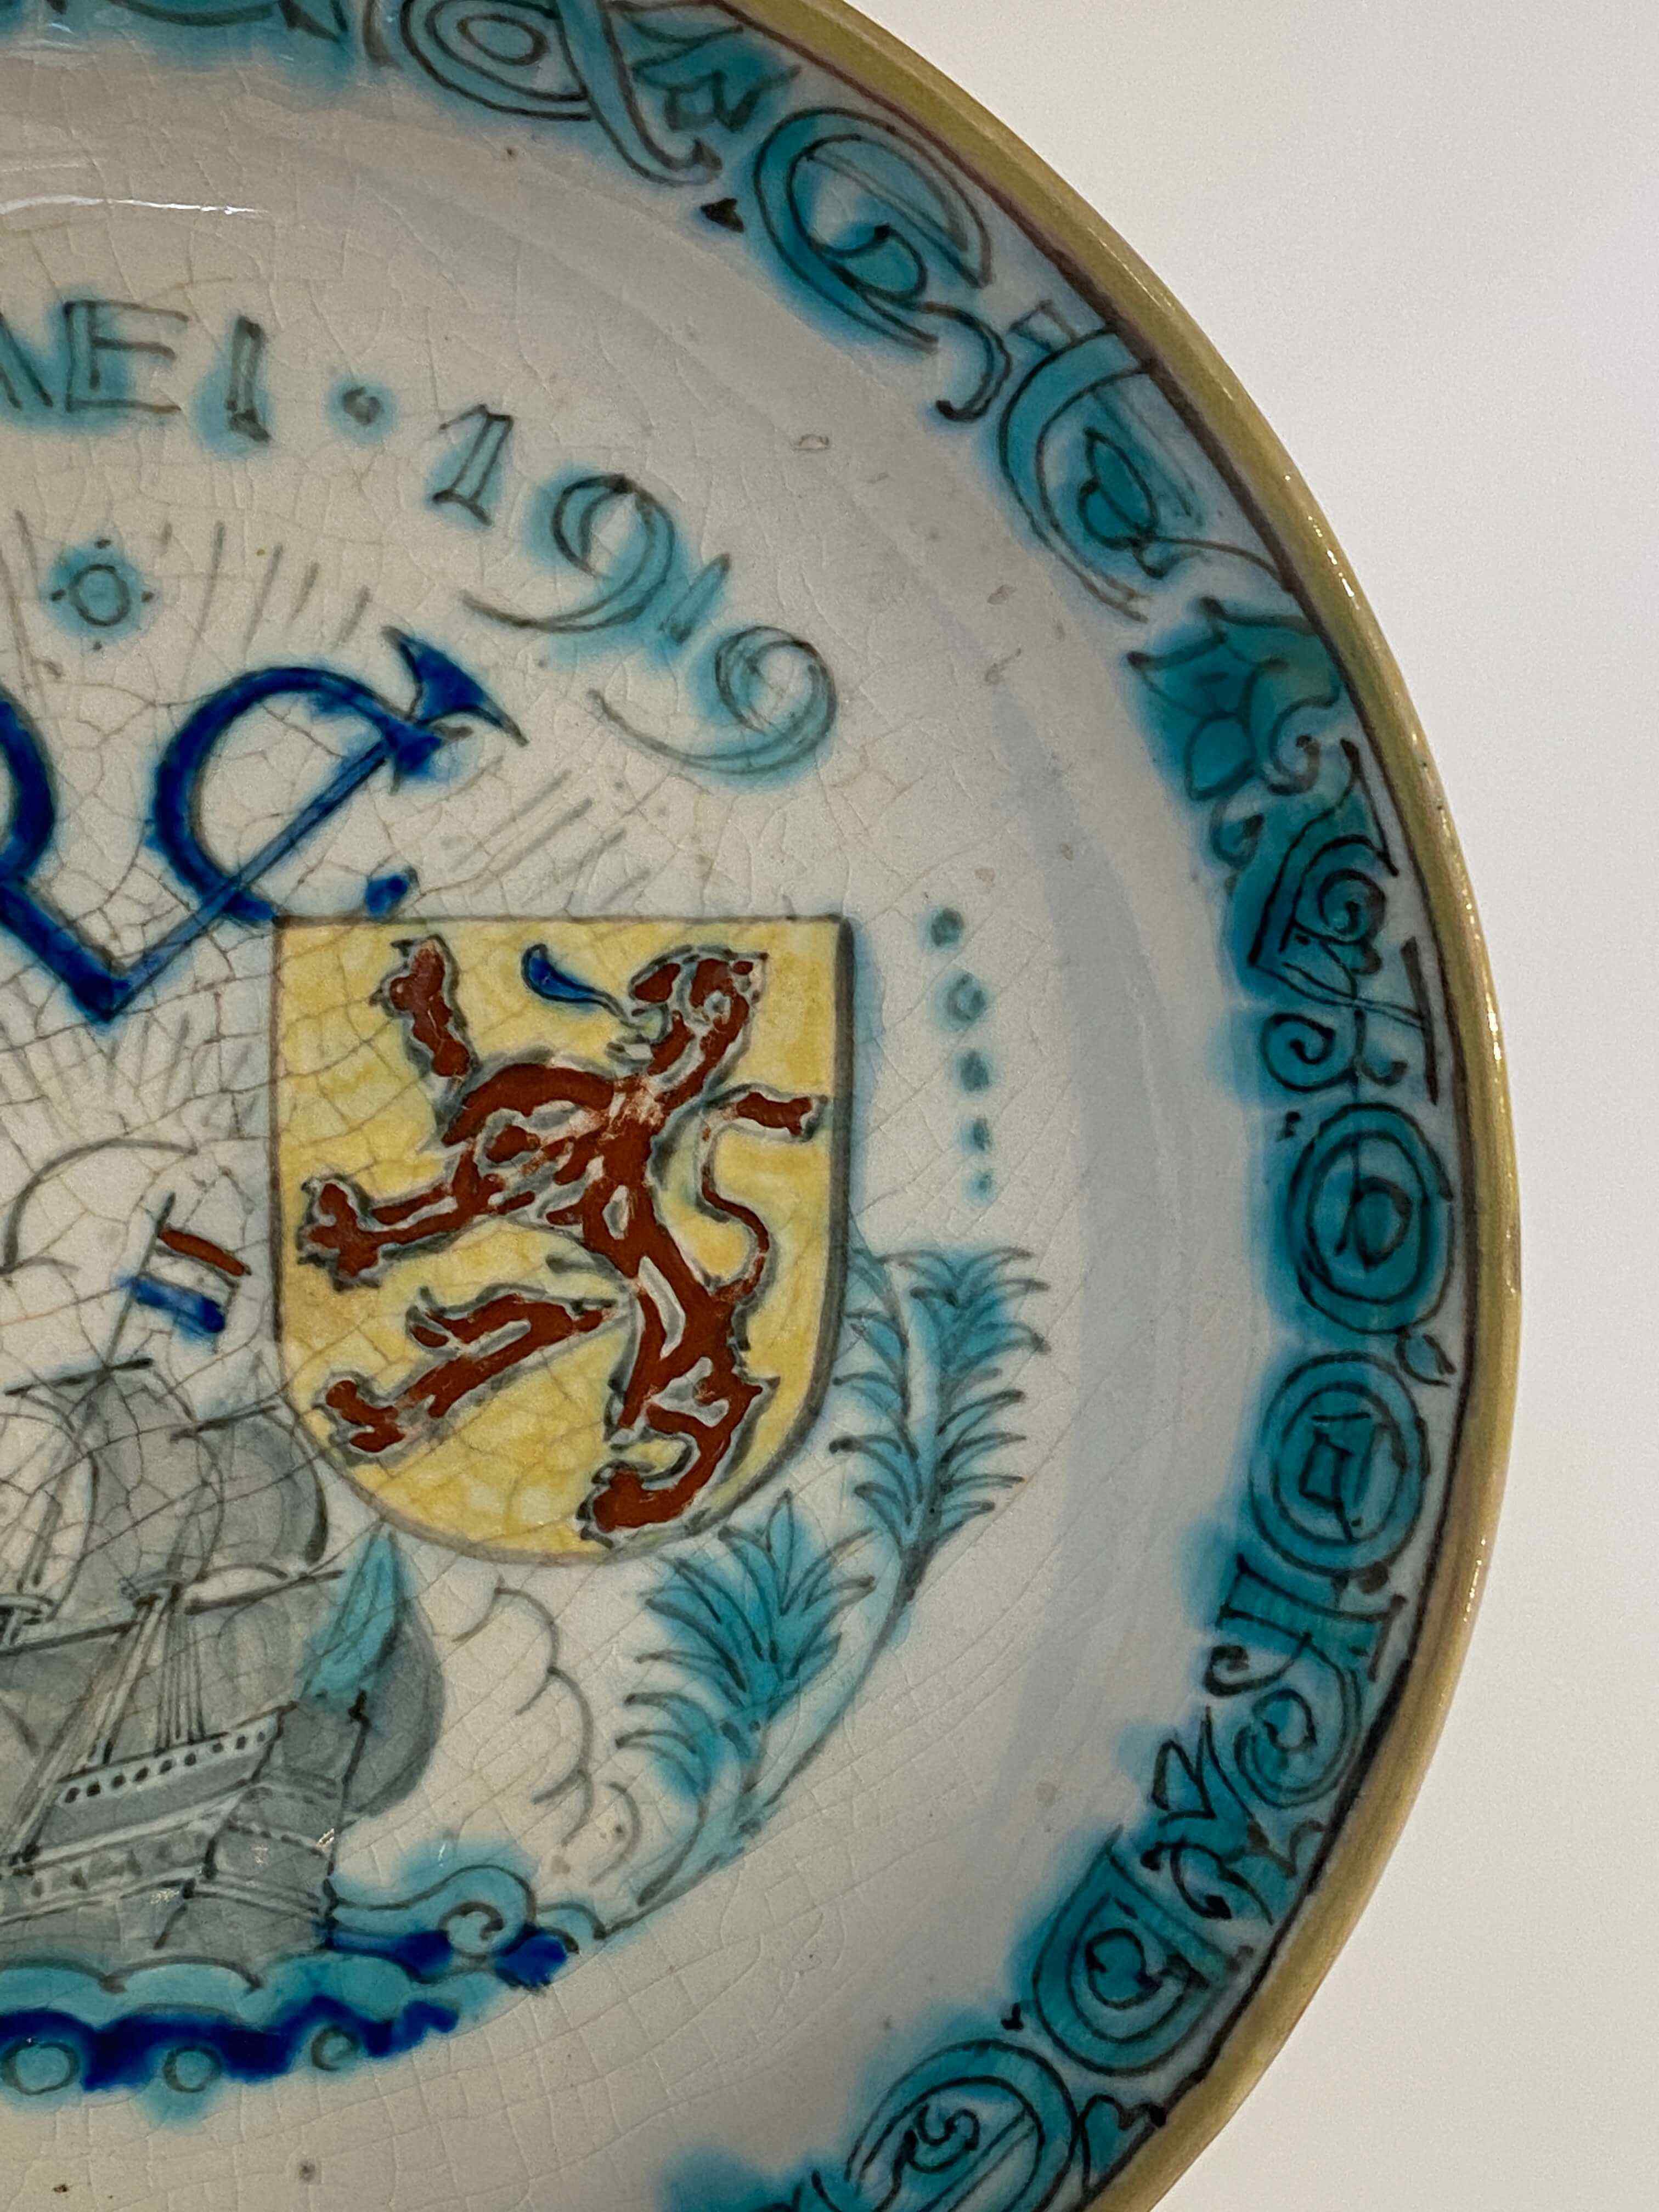 A Royal Delft de Porceleyne Fles earthenware polychrome Commemorative VOC plate, 1619-1919